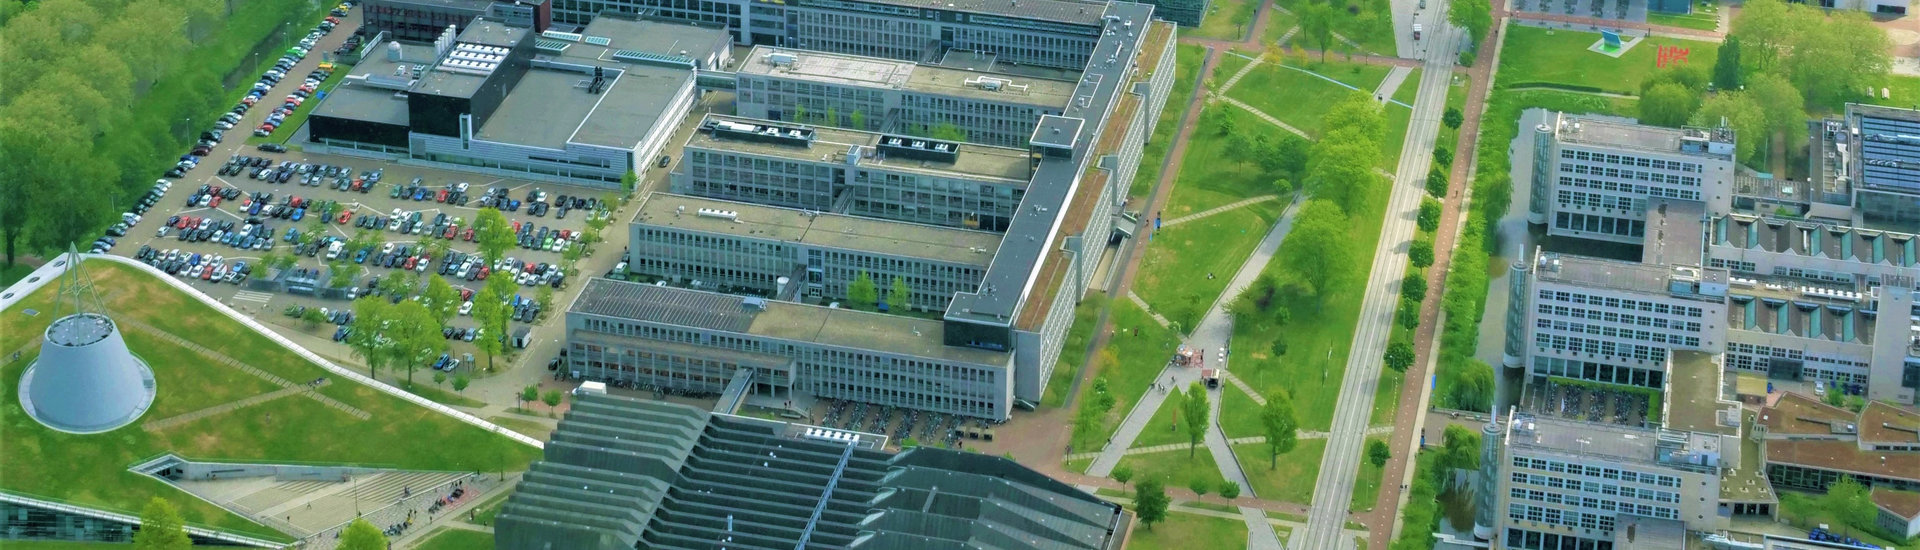 TU Delft Campus